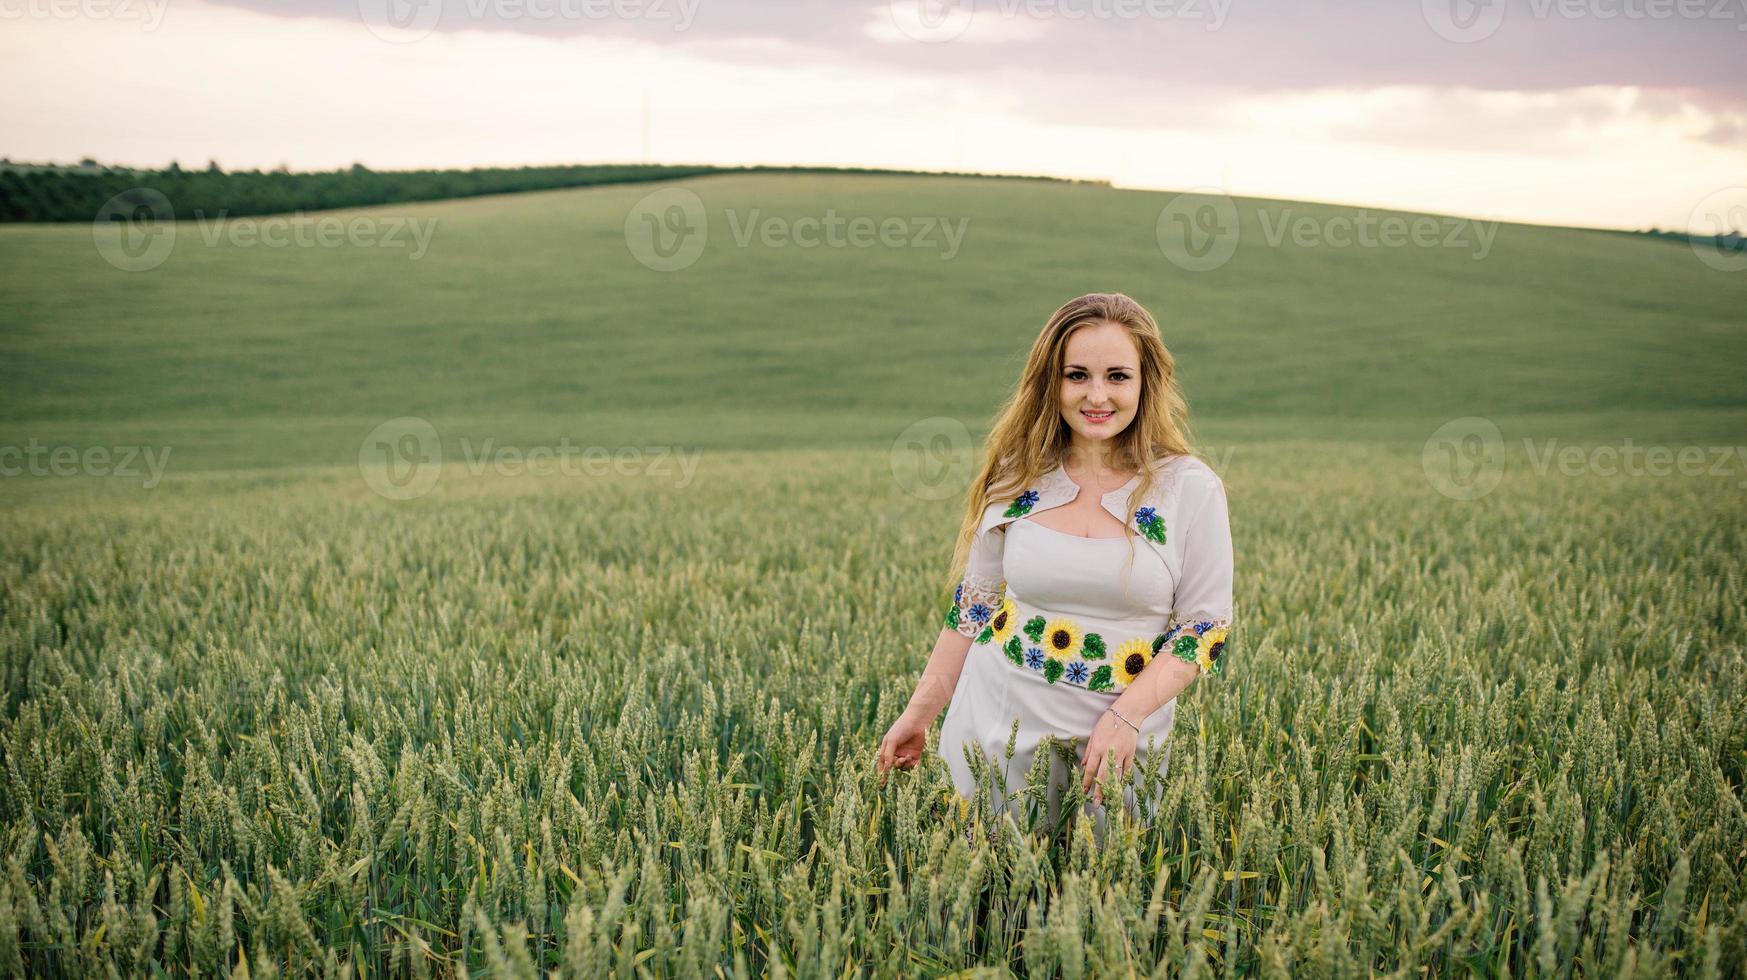 niña en vestido nacional ucraniano posó en el campo de la corona. foto